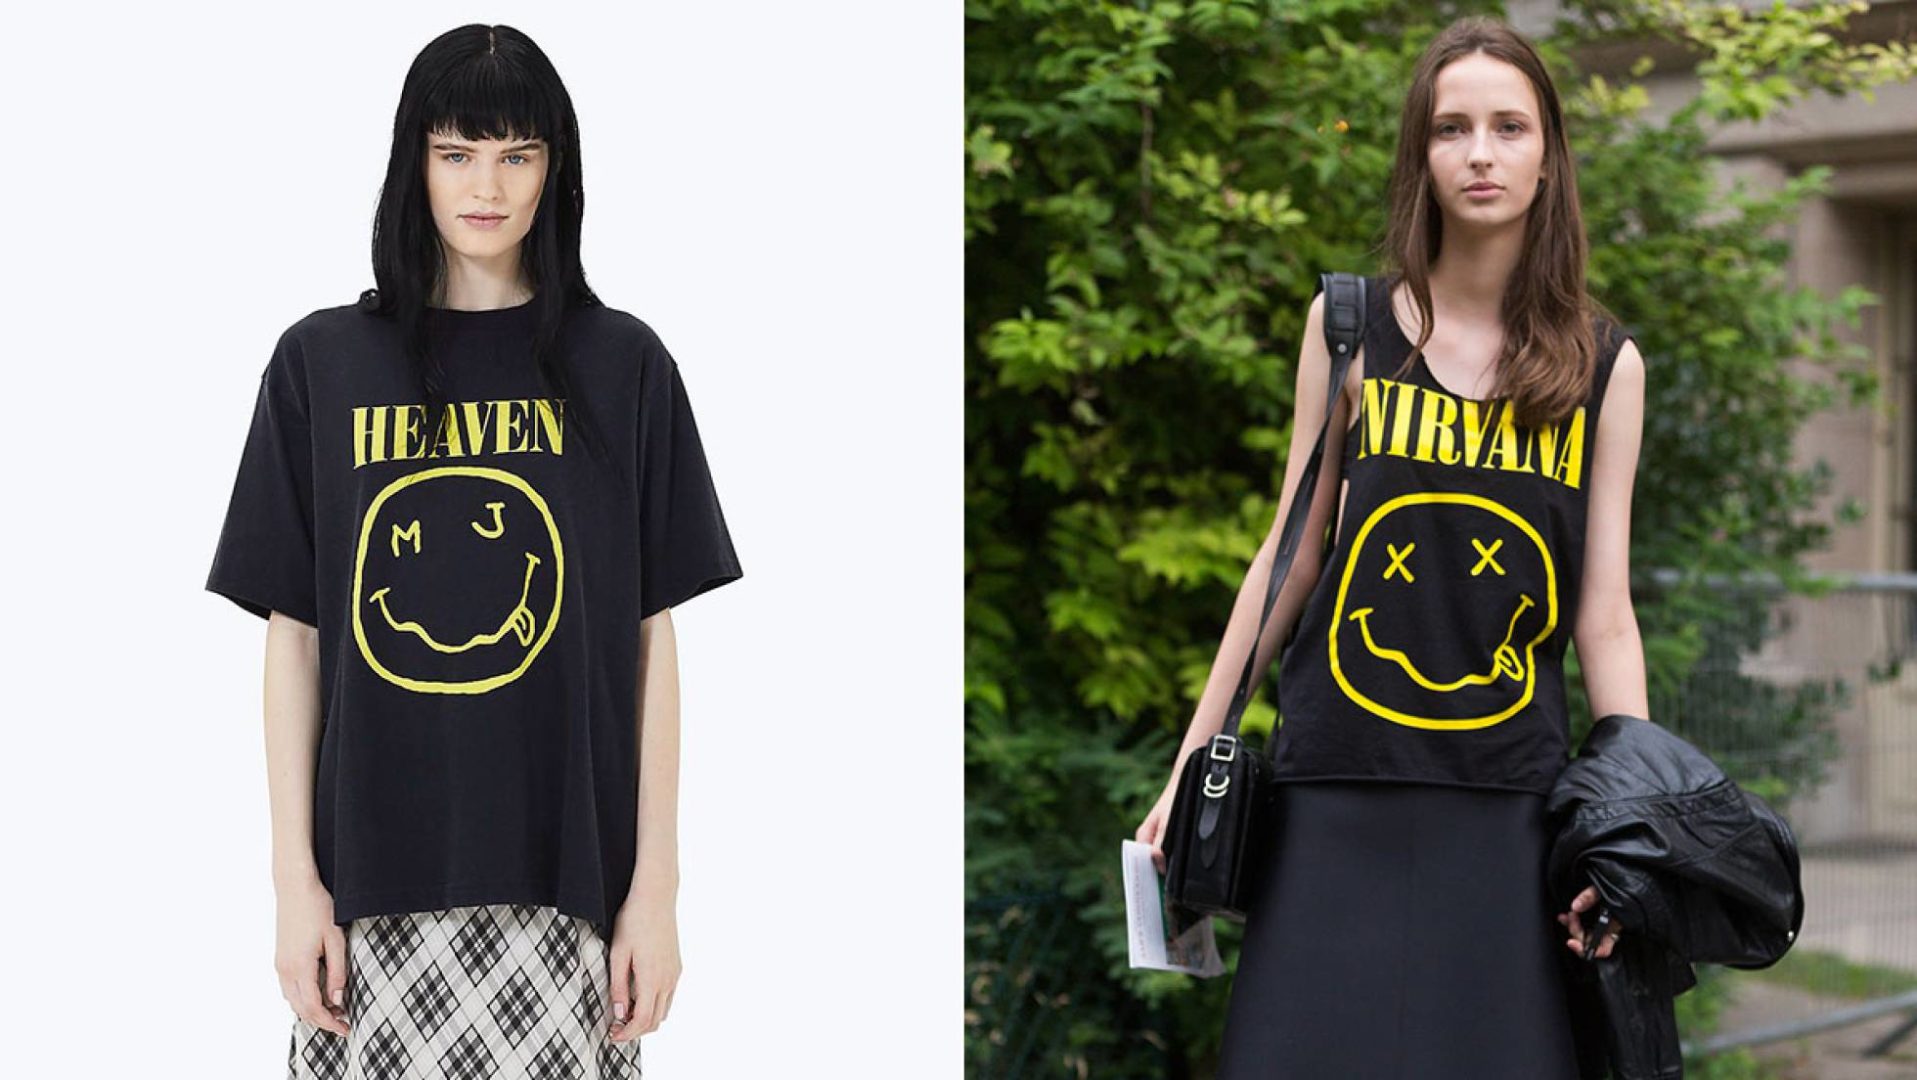 La camiseta de Marc Jacobs y, a la derecha, una modelo con la camiseta original de Nirvana. MARC JACOBS / GETTY